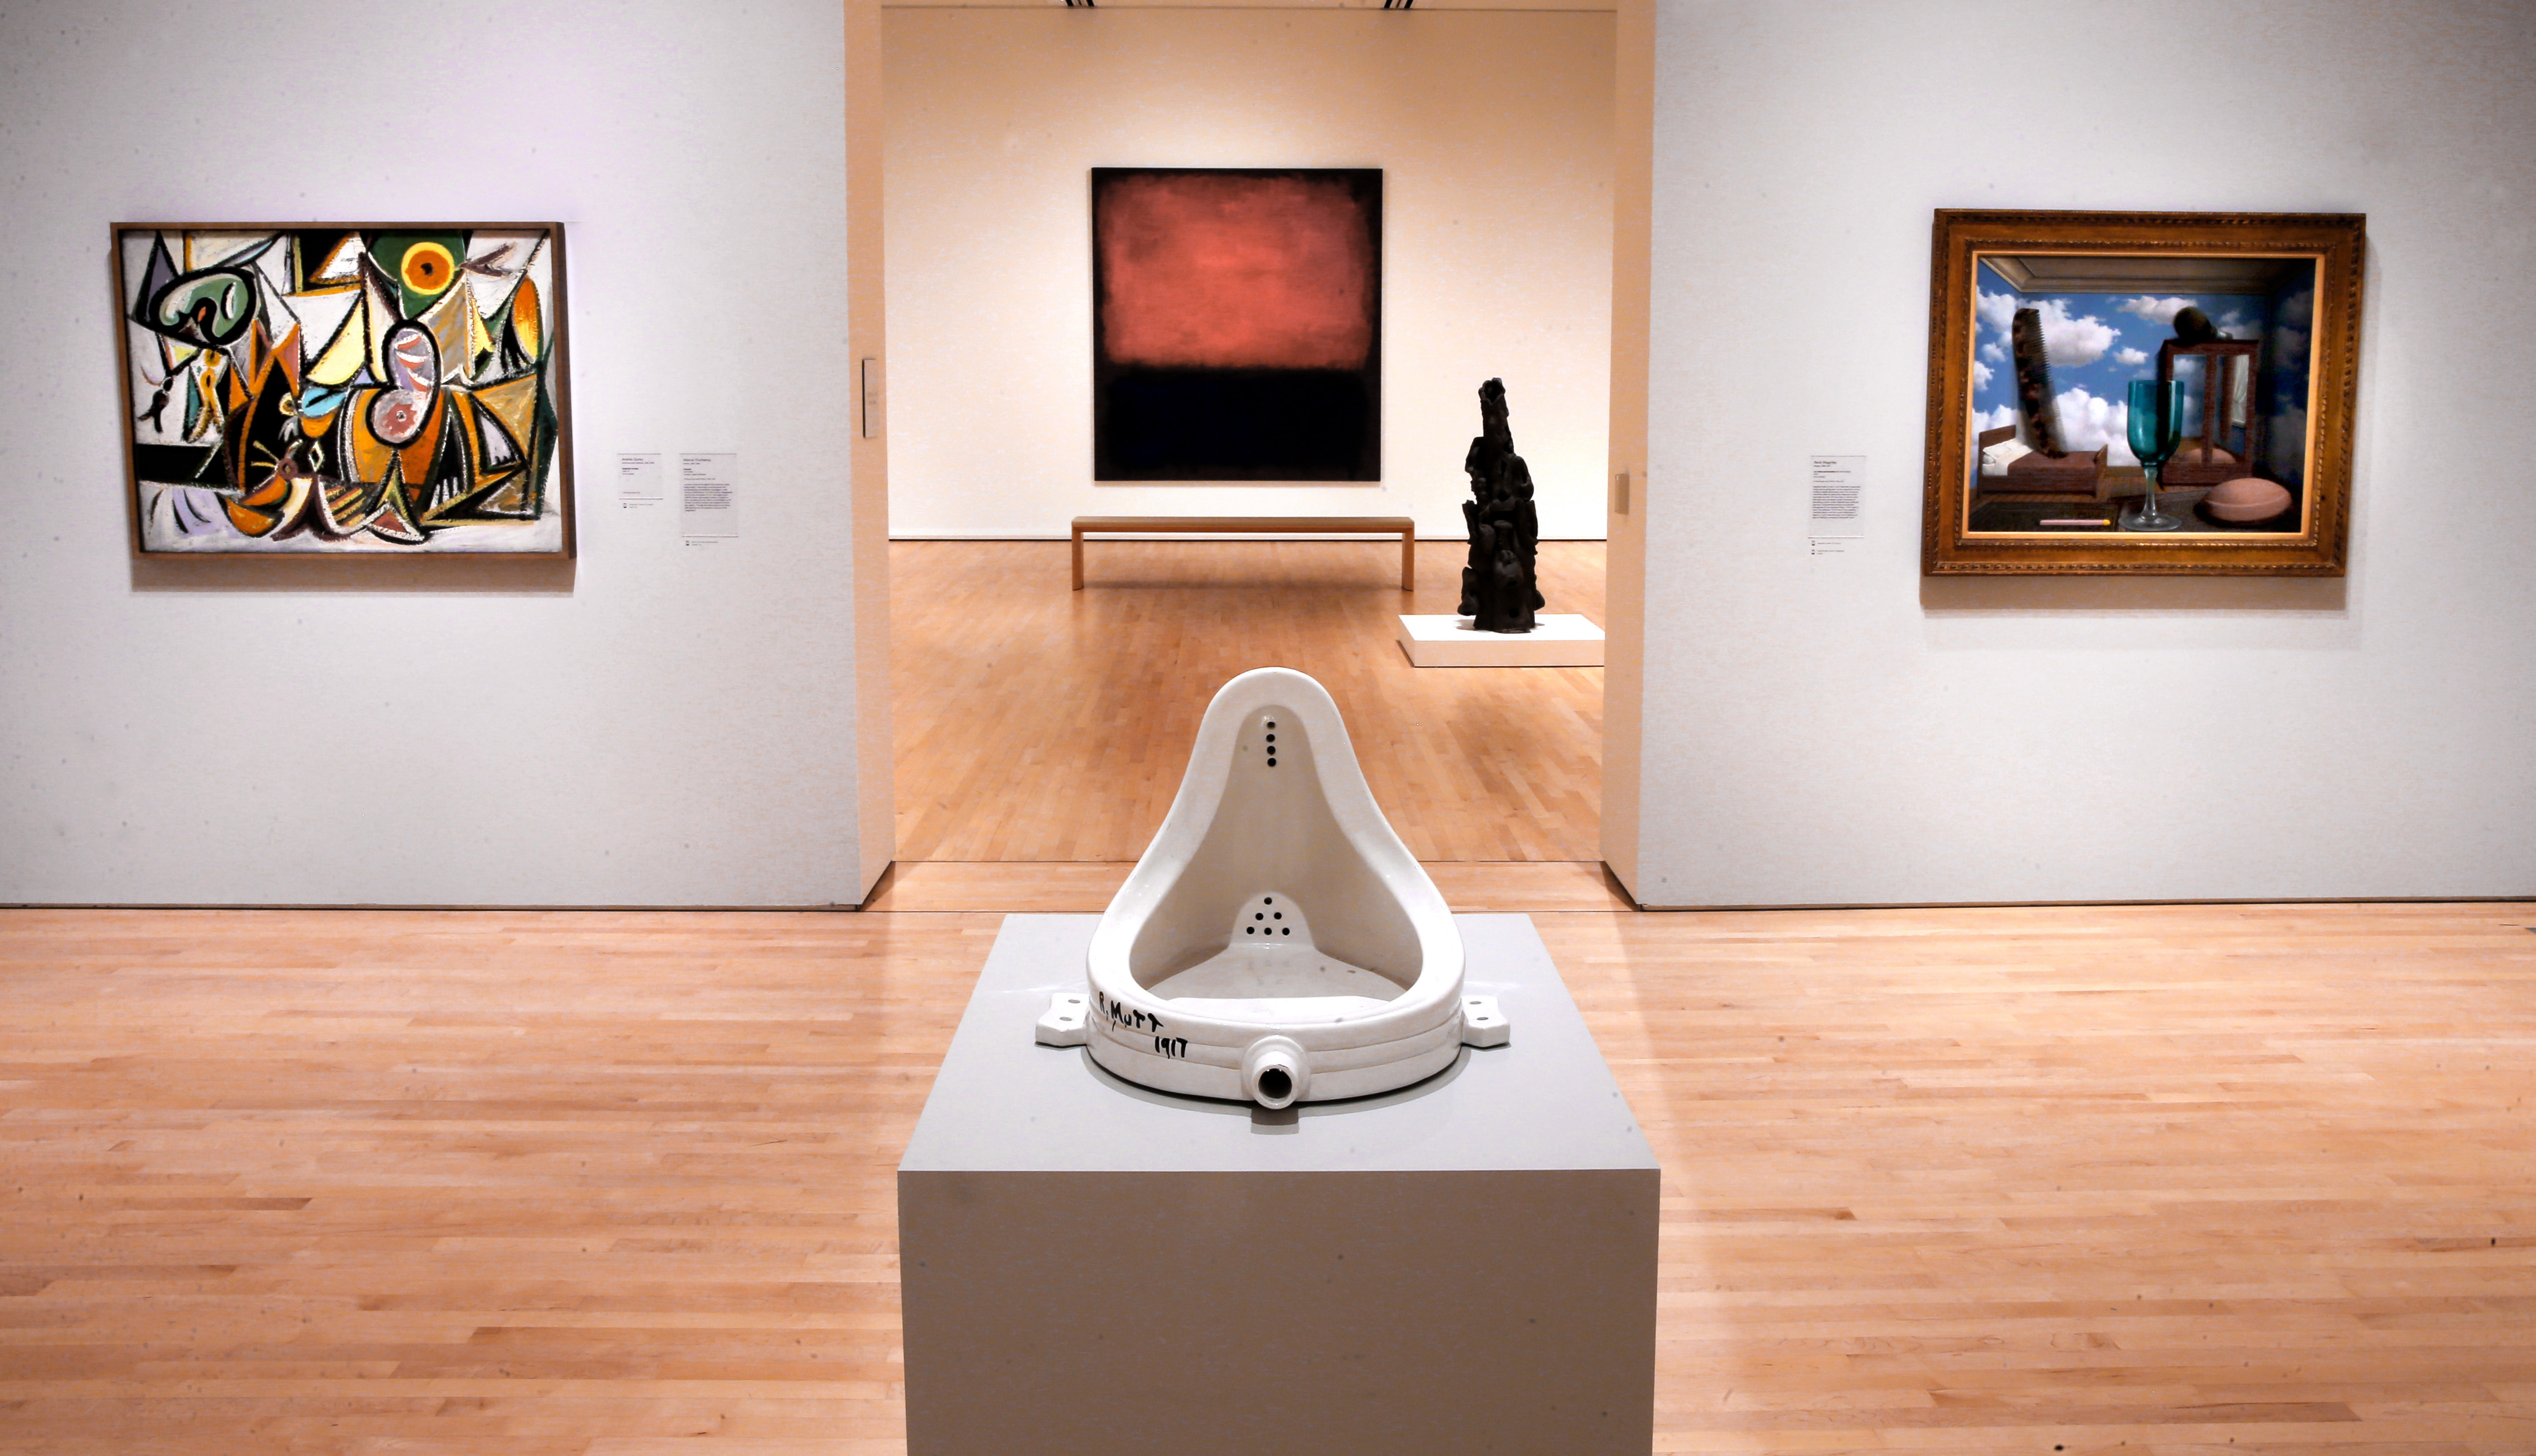 Duchamp, uno de los primeros provocadores desde el conceptualismo. La Fuente en la adición recién terminada del Museo de Arte Moderno de San Francisco, California, abril de 2016.